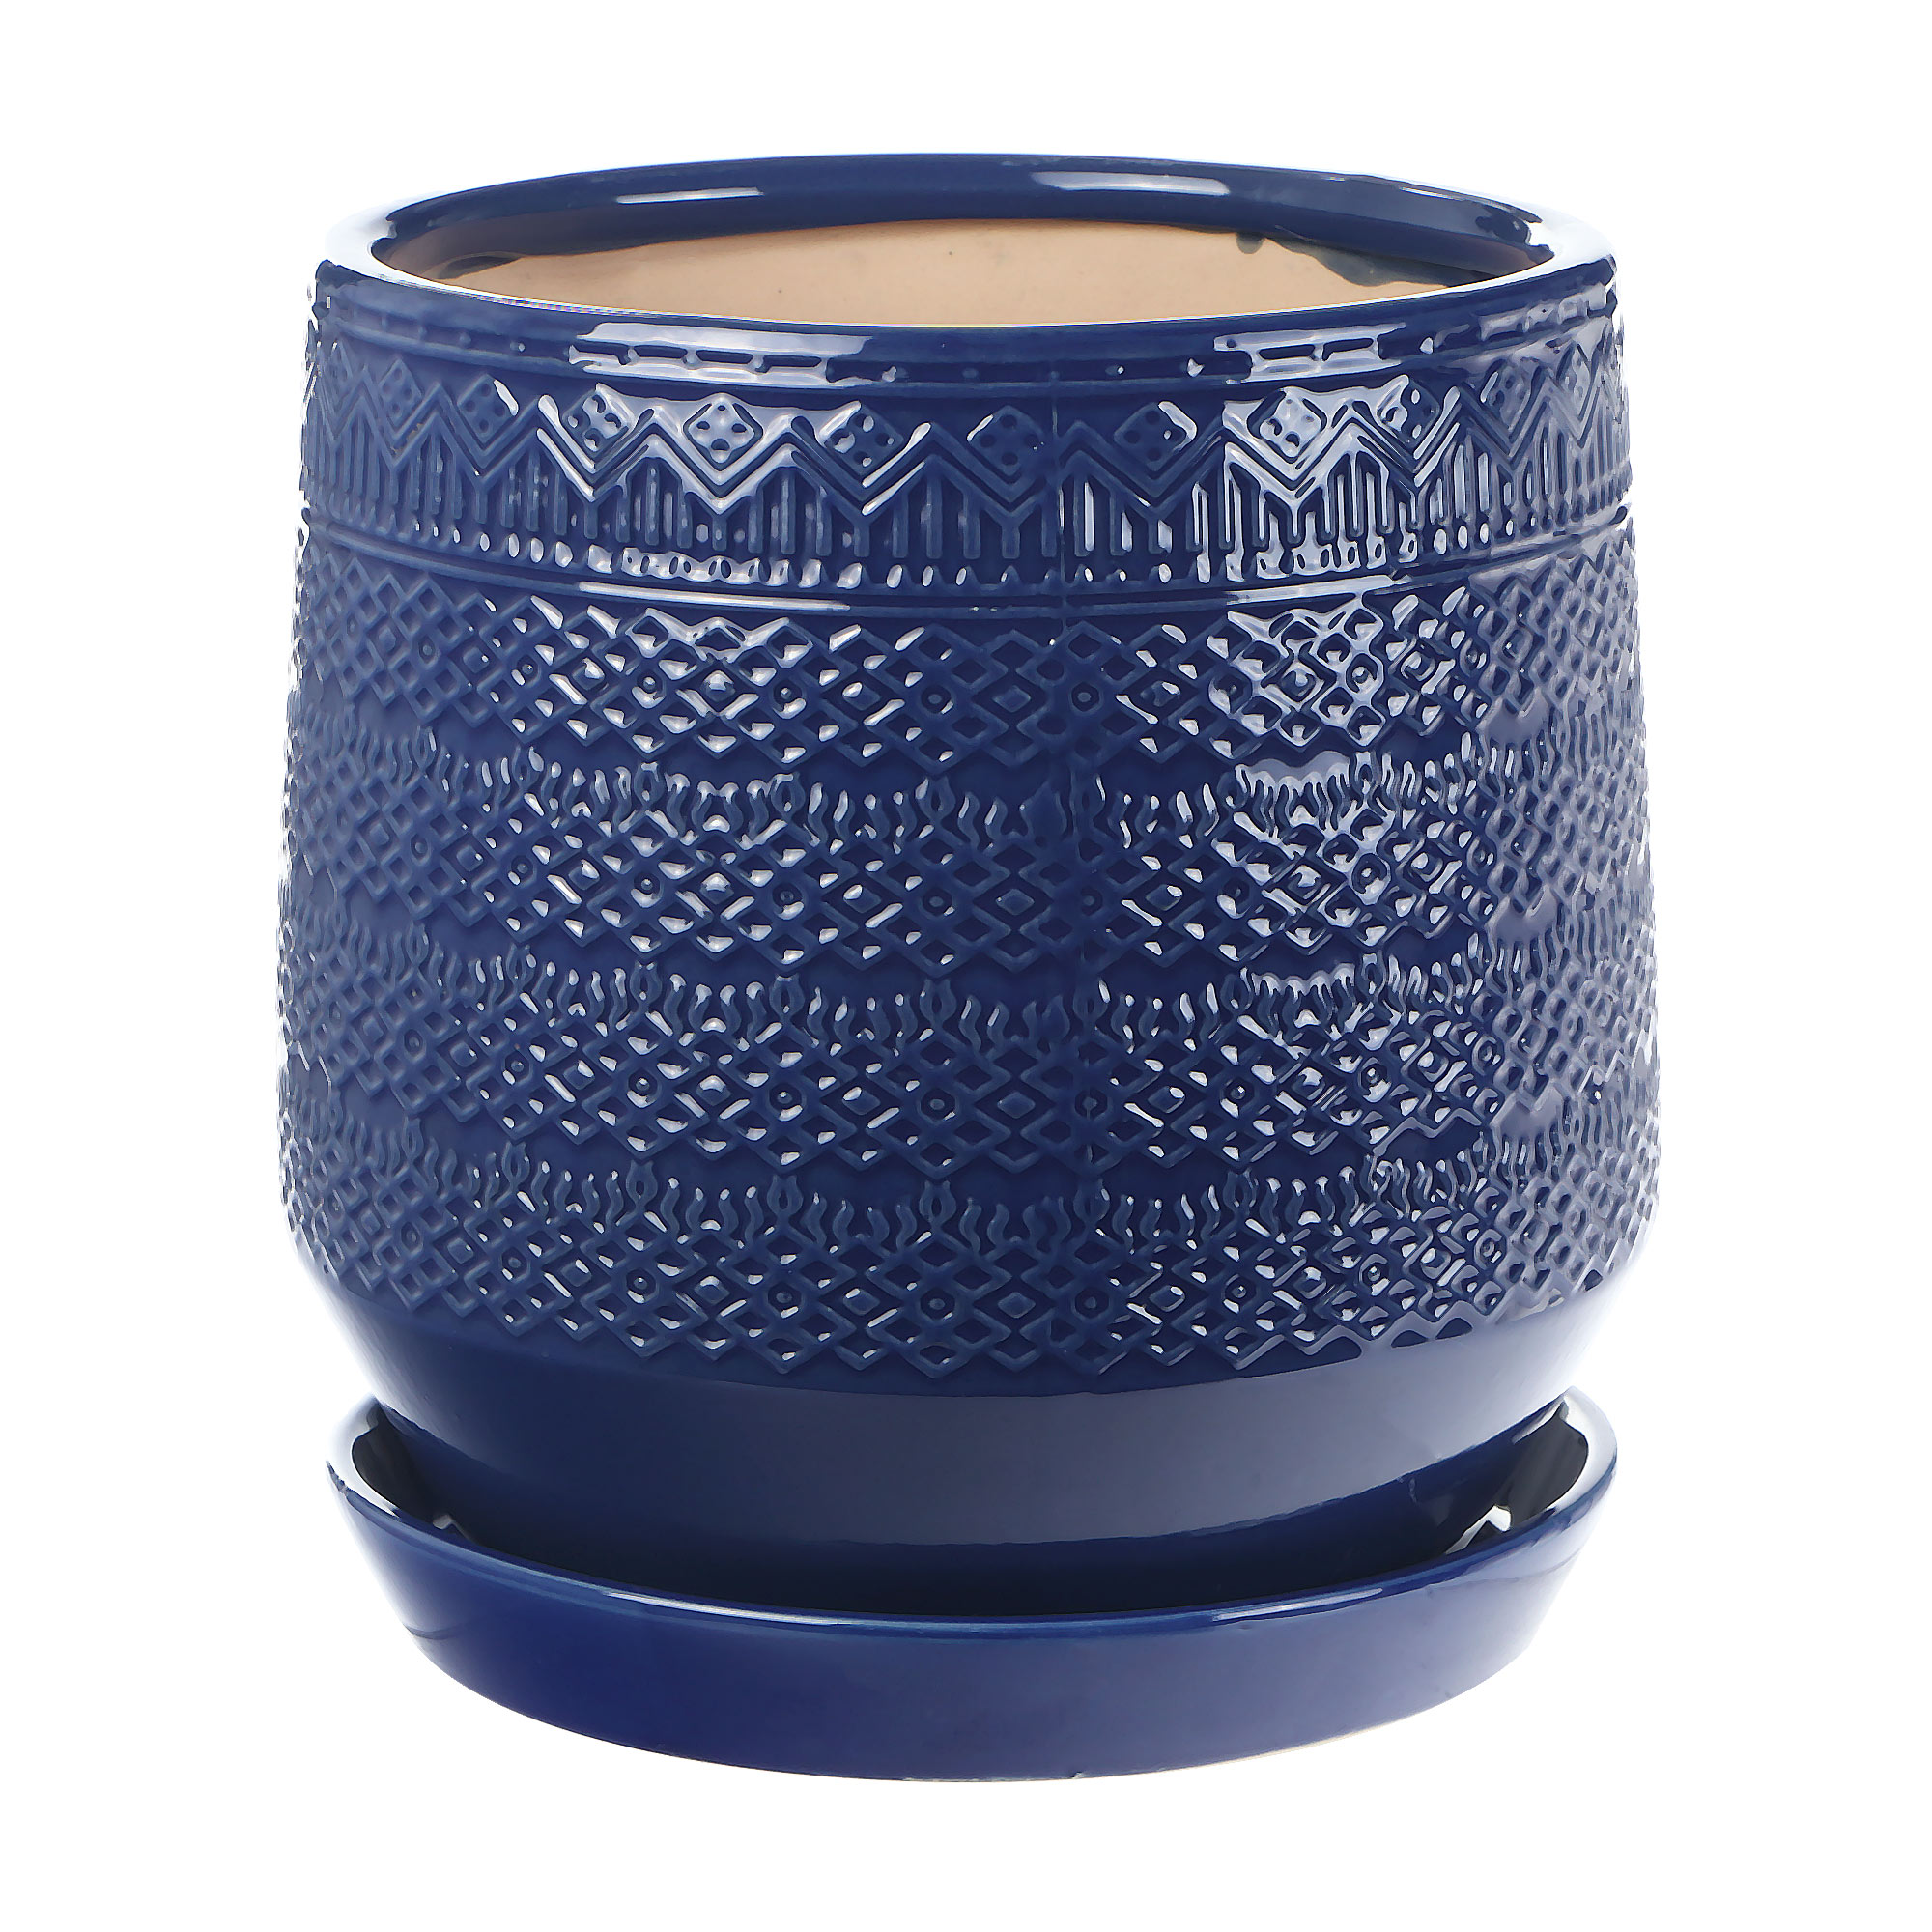 Горшок керамический для цветов Qianjin синий узор д20.5 керамический горшок с поддоном композит маджента чёрный с серым 18 см